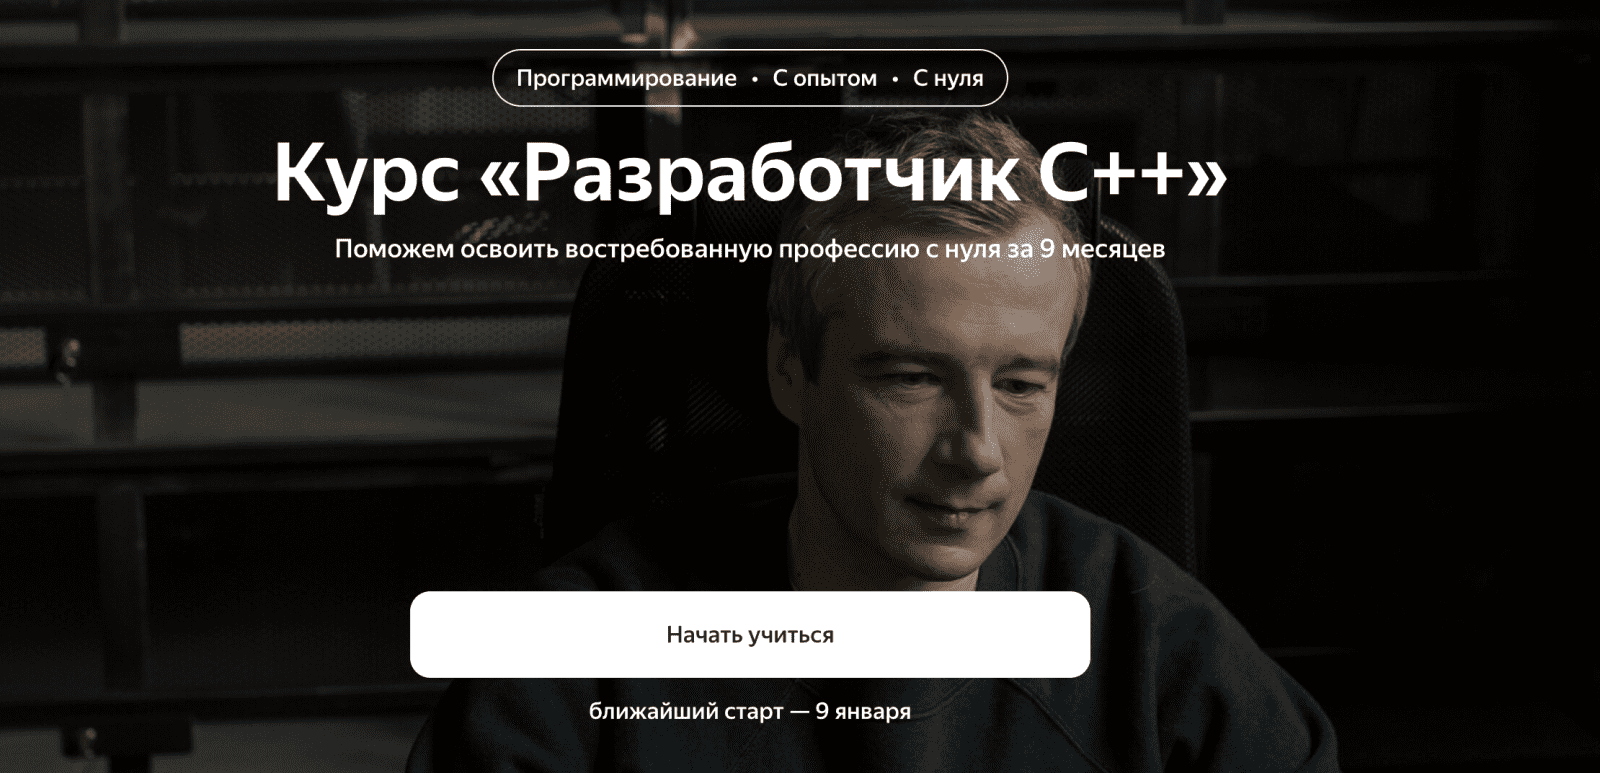 Изображение [Яндекс.Практикум] Разработчик C++ [Часть 8 из 9] в посте 296223